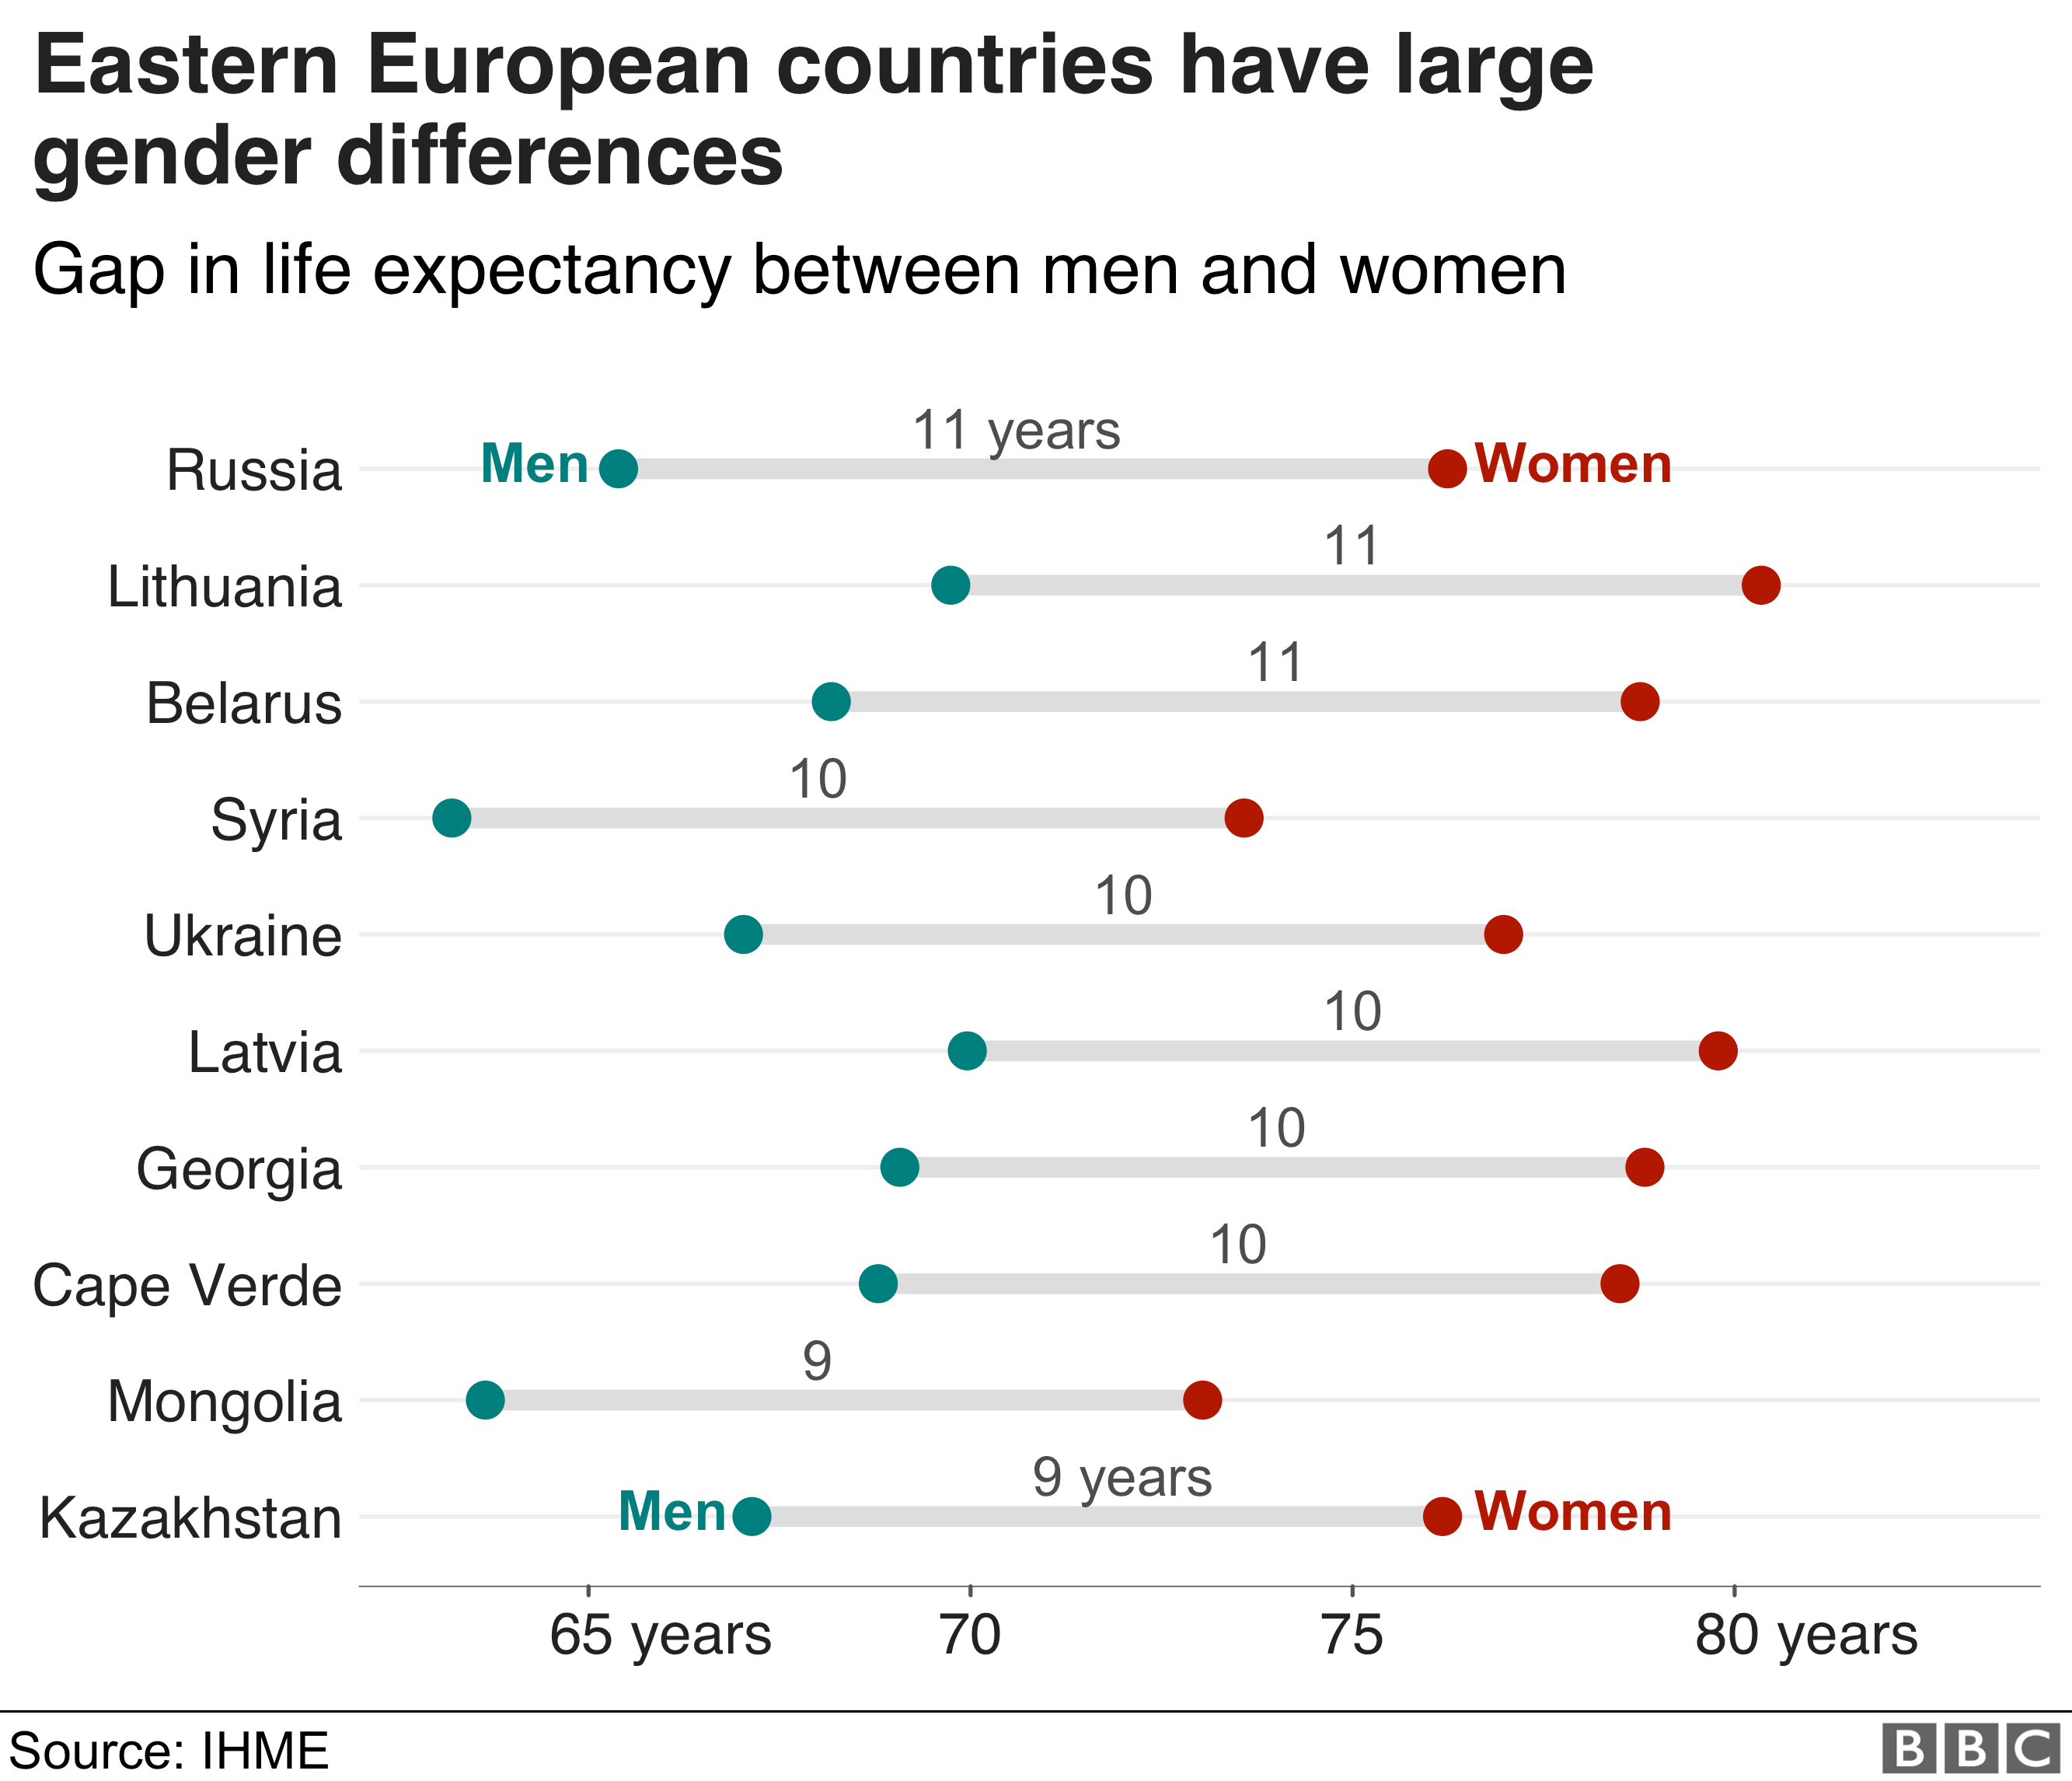 Разница в продолжительности жизни между мужчинами и женщинами - в России самая большая продолжительность жизни, поскольку женщины живут в среднем на 11 лет дольше мужчин